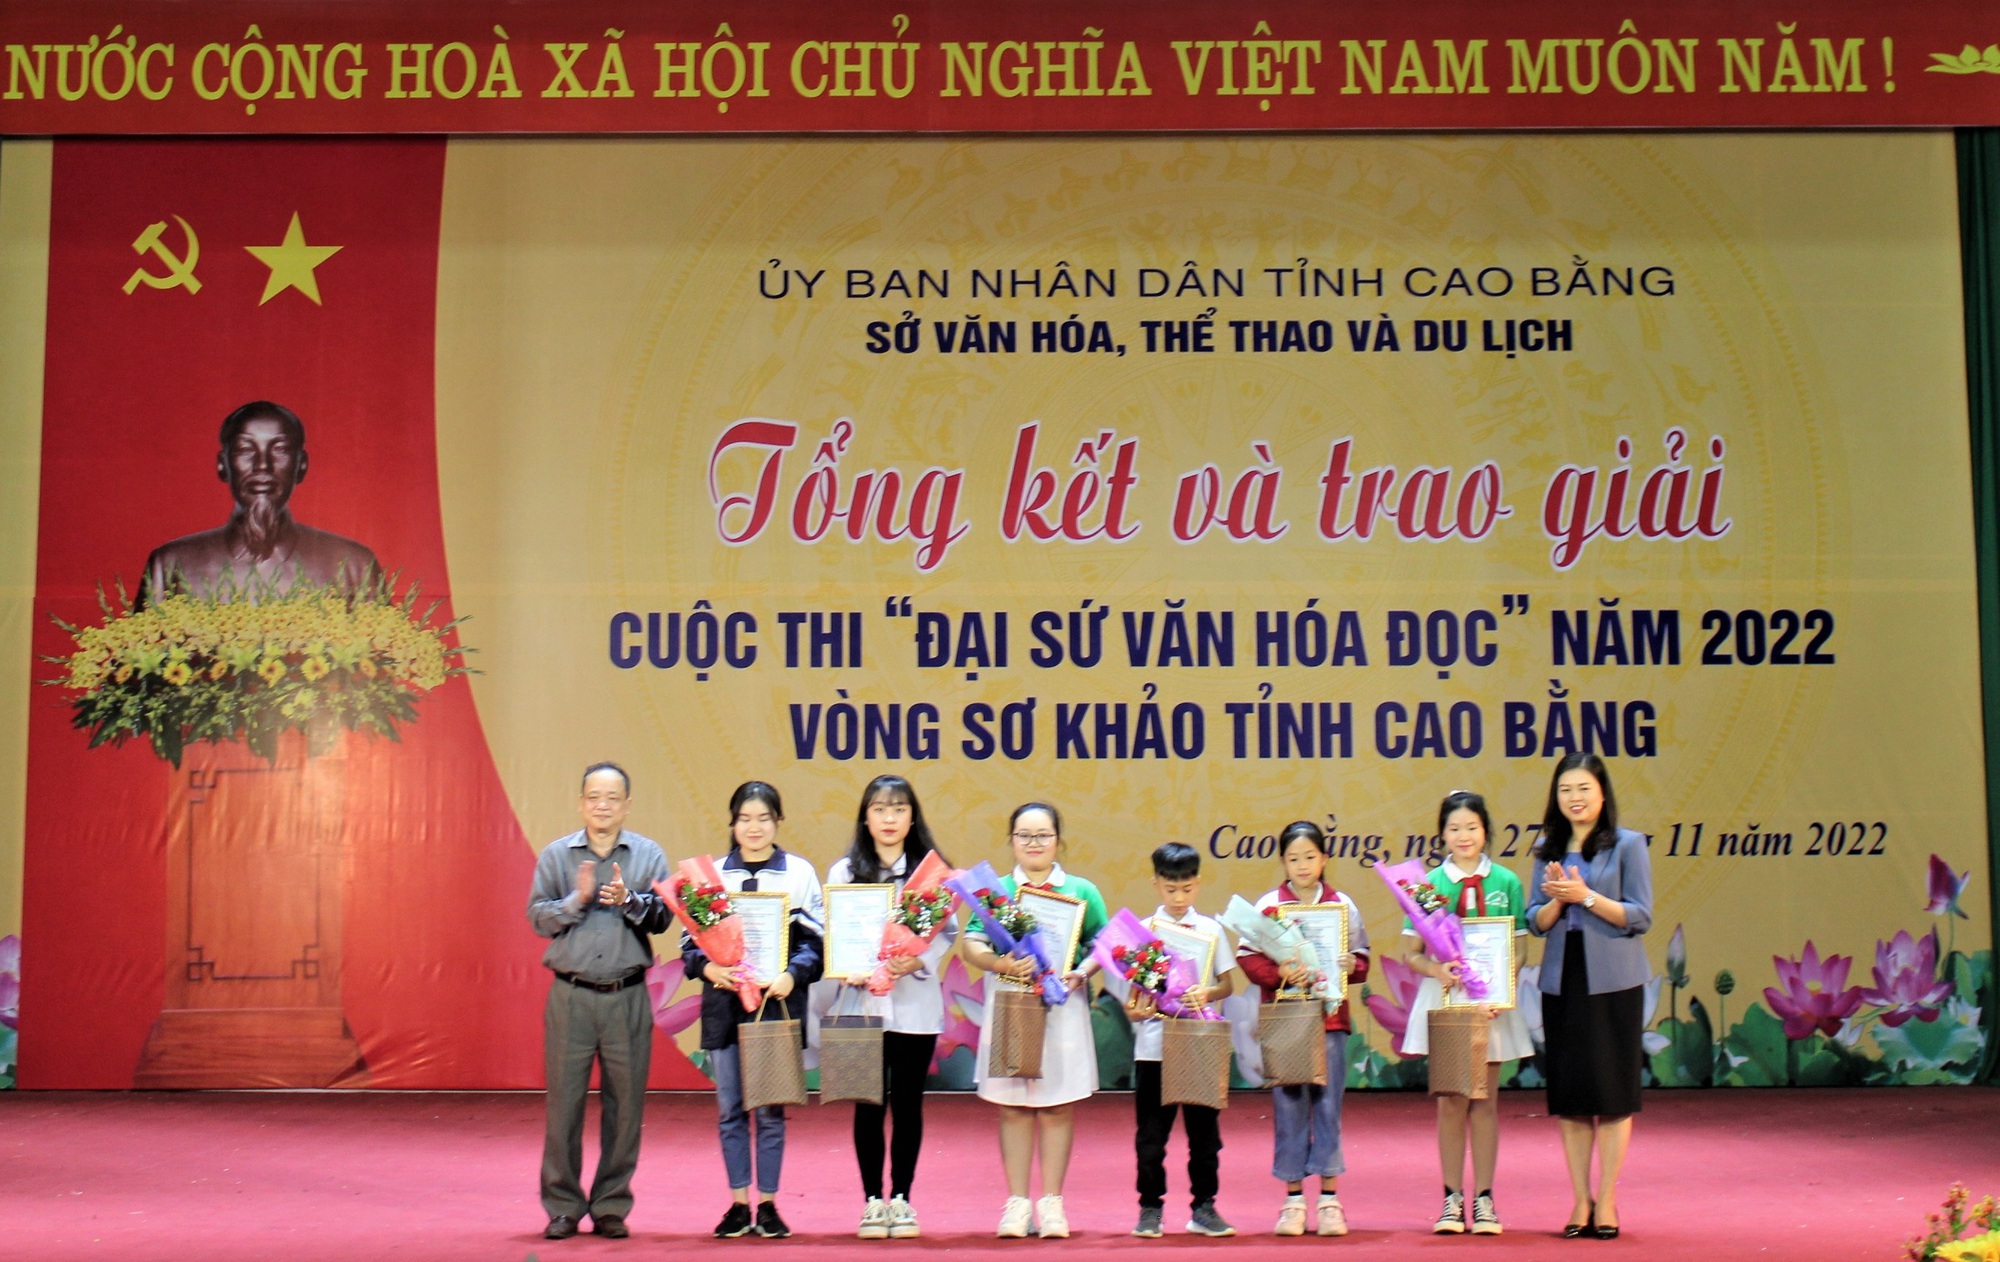 Cao Bằng: Tổng kết và trao giải Cuộc thi “Đại sứ văn hóa đọc” tỉnh năm 2022 - Ảnh 1.